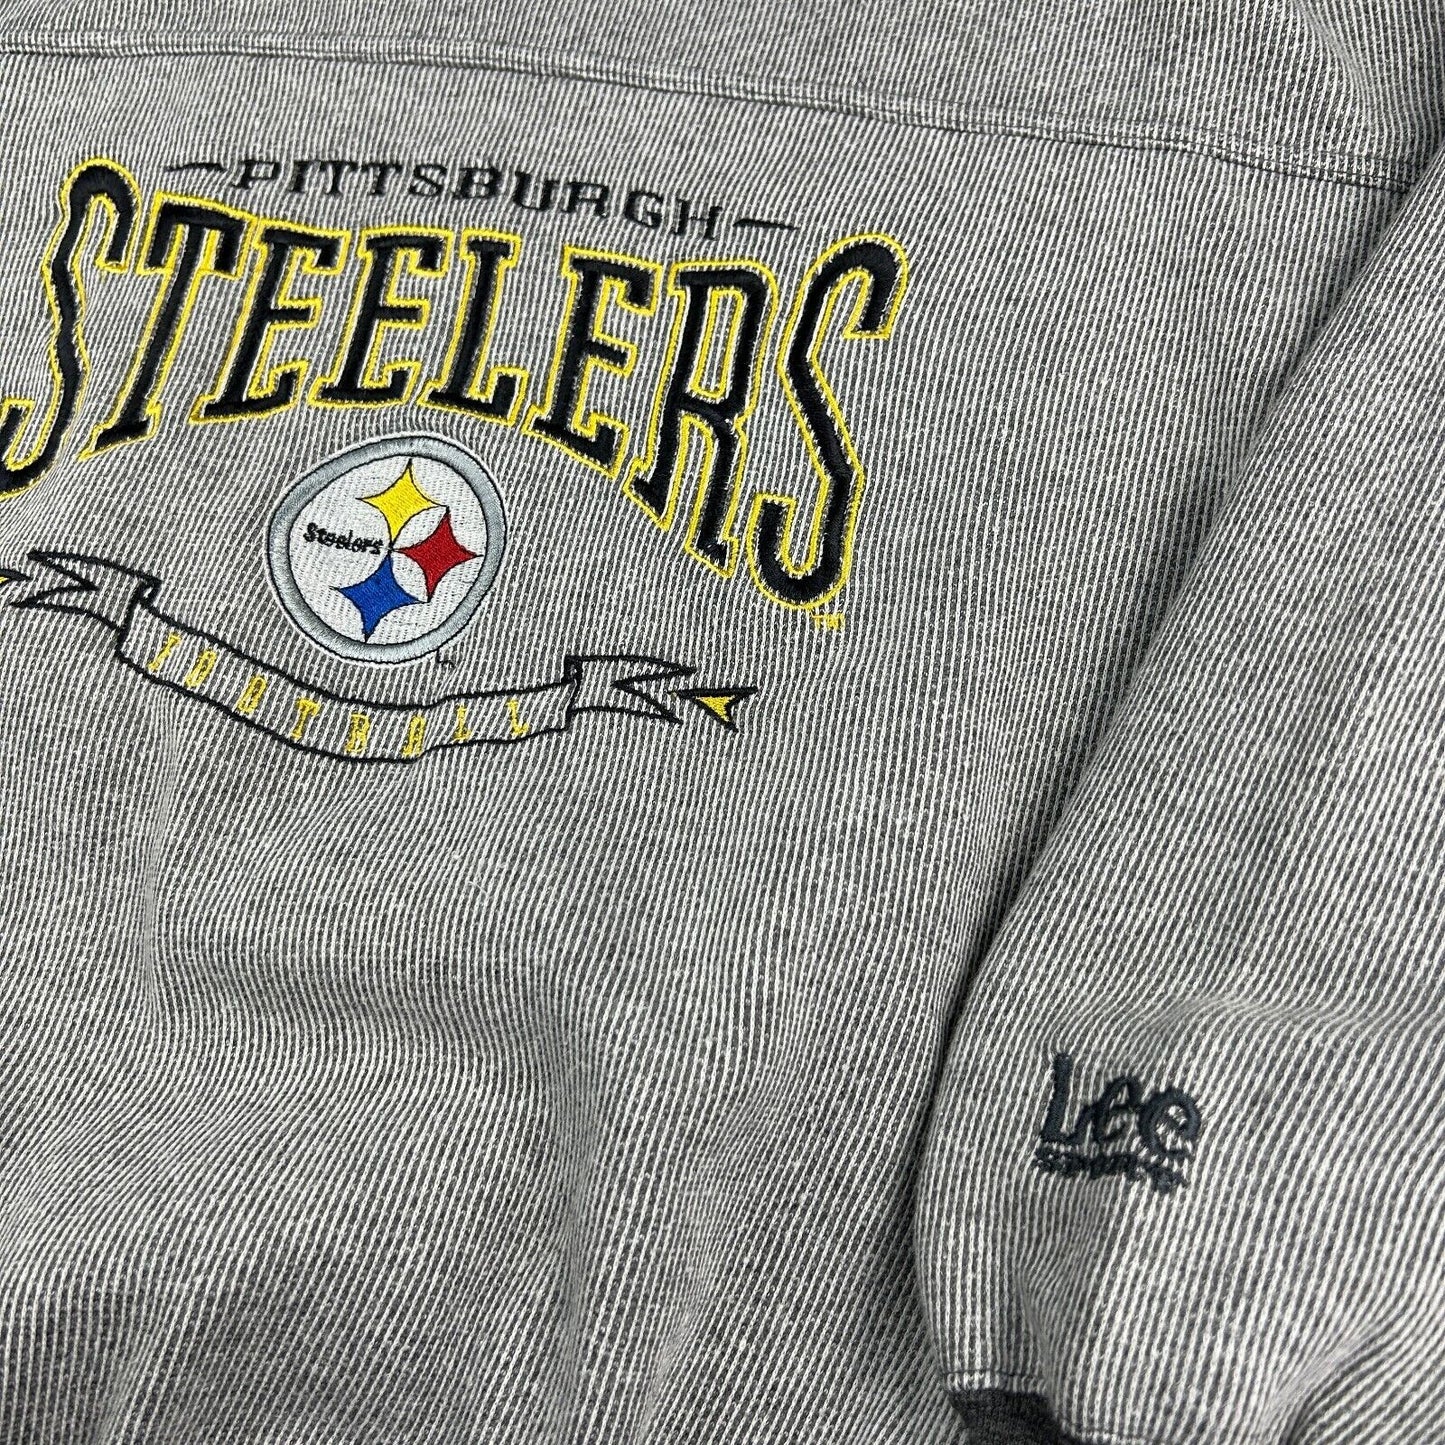 VINTAGE 90s Pittsburgh Steelers NFL Lee Sport Crewneck Sweater sz Medium Adult